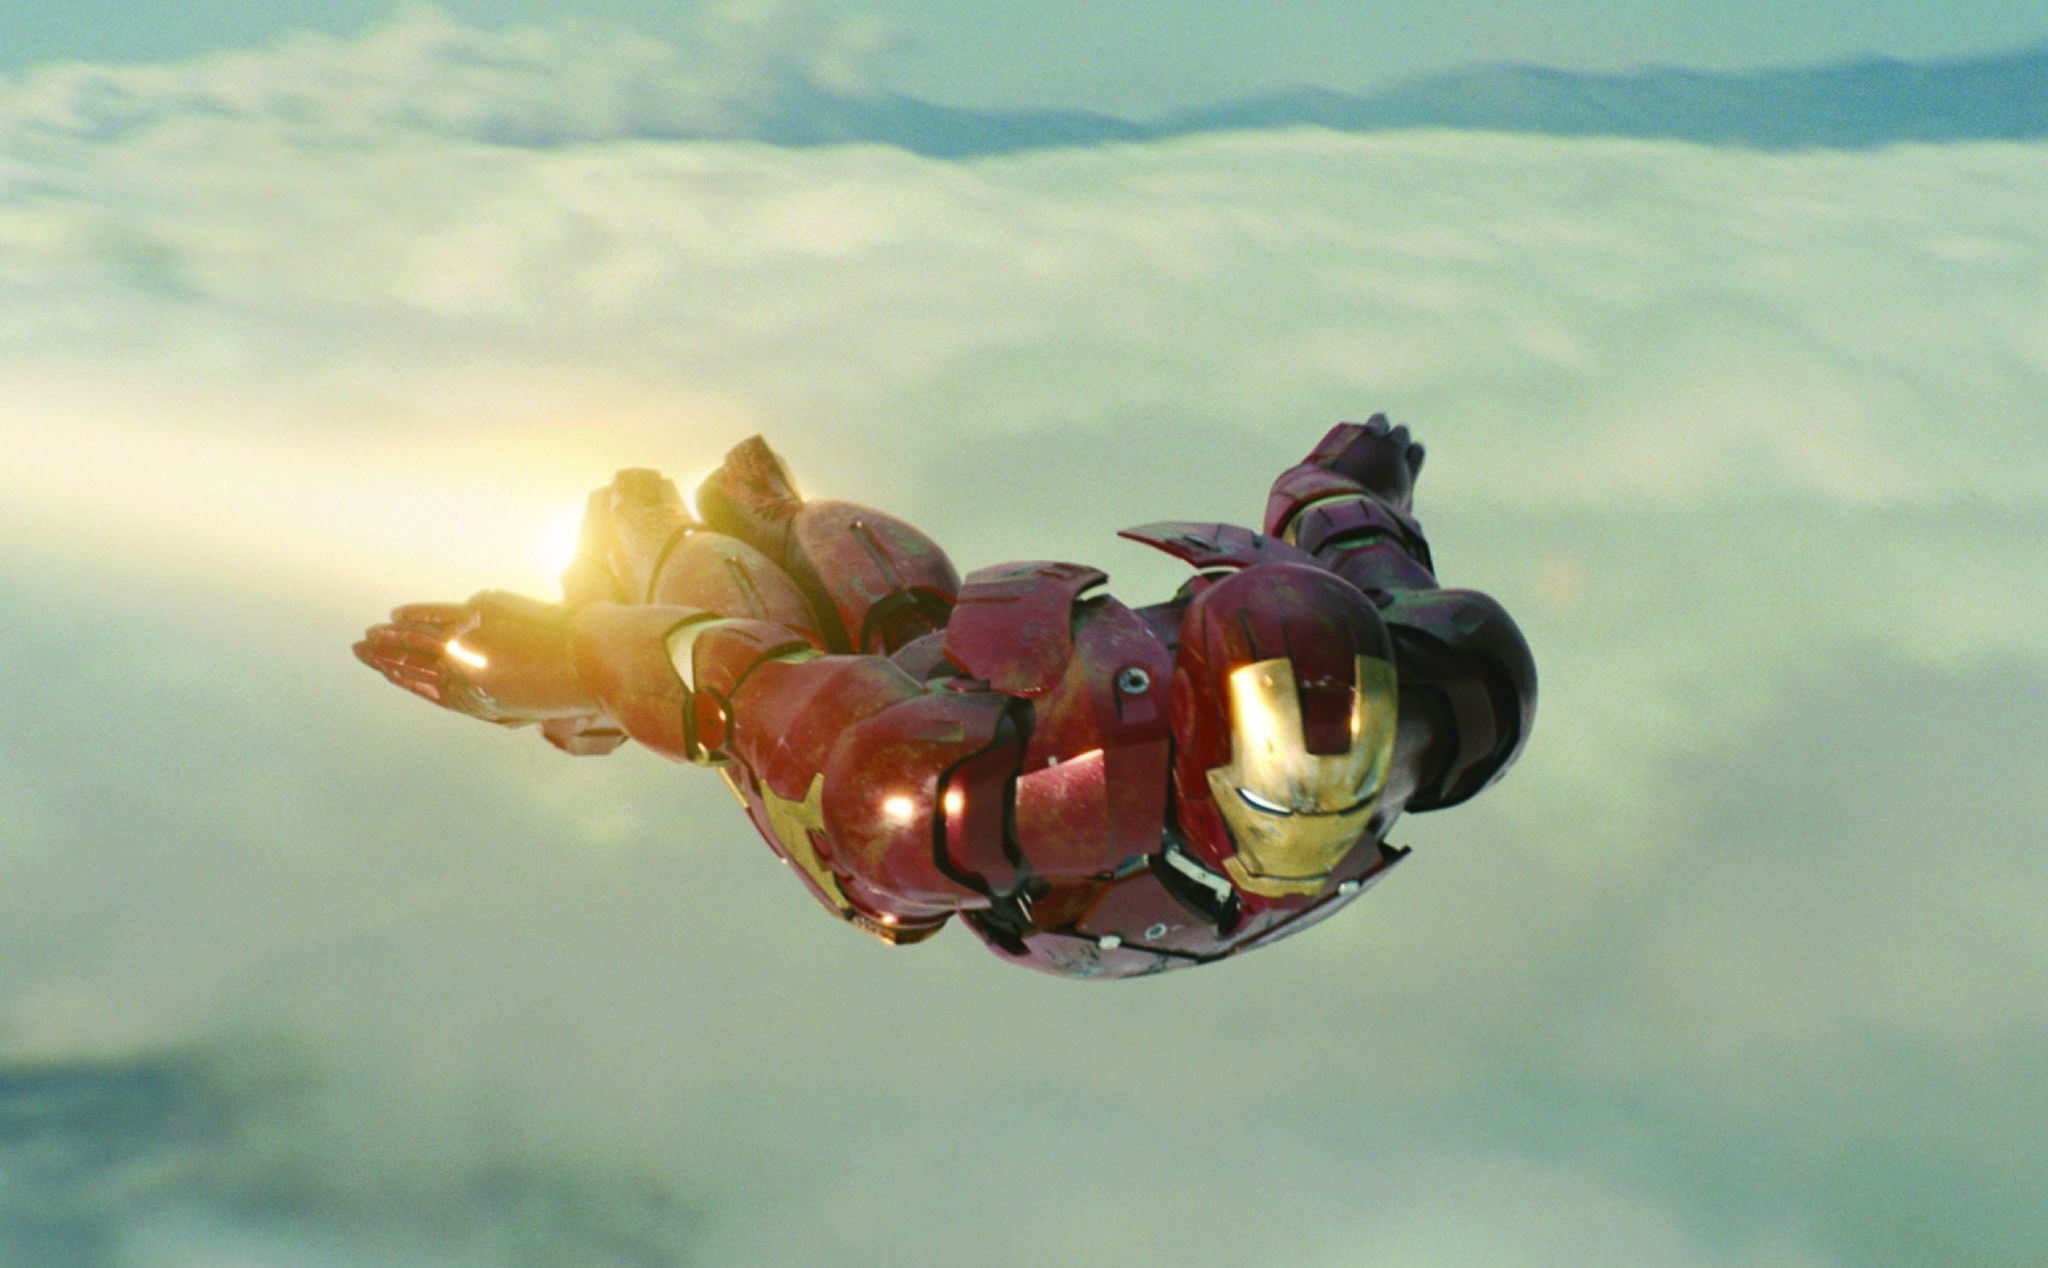 Marvel đã cho ra mắt cả một vũ trụ phim chuyên biệt về siêu anh hùng rực lửa - Iron Man. Bạn hãy cùng xem những bức ảnh, phim ảnh đặc sắc của Iron Man & Marvel để thấy rõ sự sáng tạo và tâm huyết của đạo diễn cùng các diễn viên trong việc xây dựng thế giới siêu anh hùng đáng kinh ngạc này nhé!